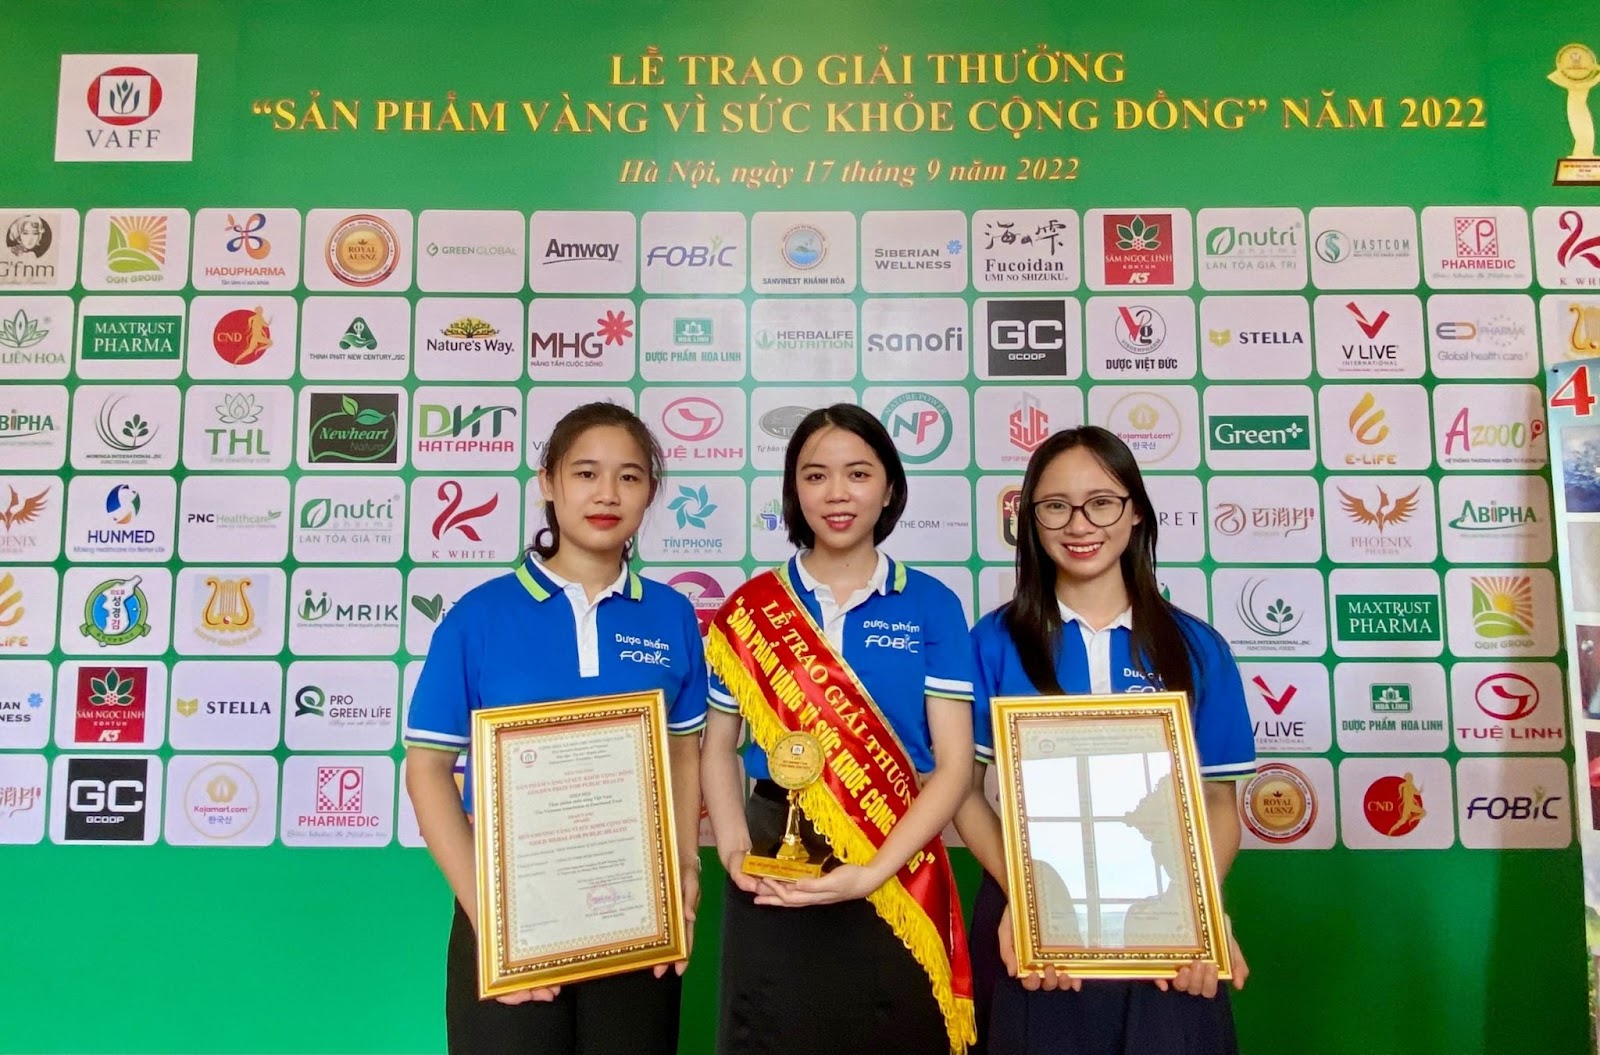 Bảo Khí Khang vinh dự nhận giải “Sản phẩm vàng vì sức khỏe cộng đồng” - 4